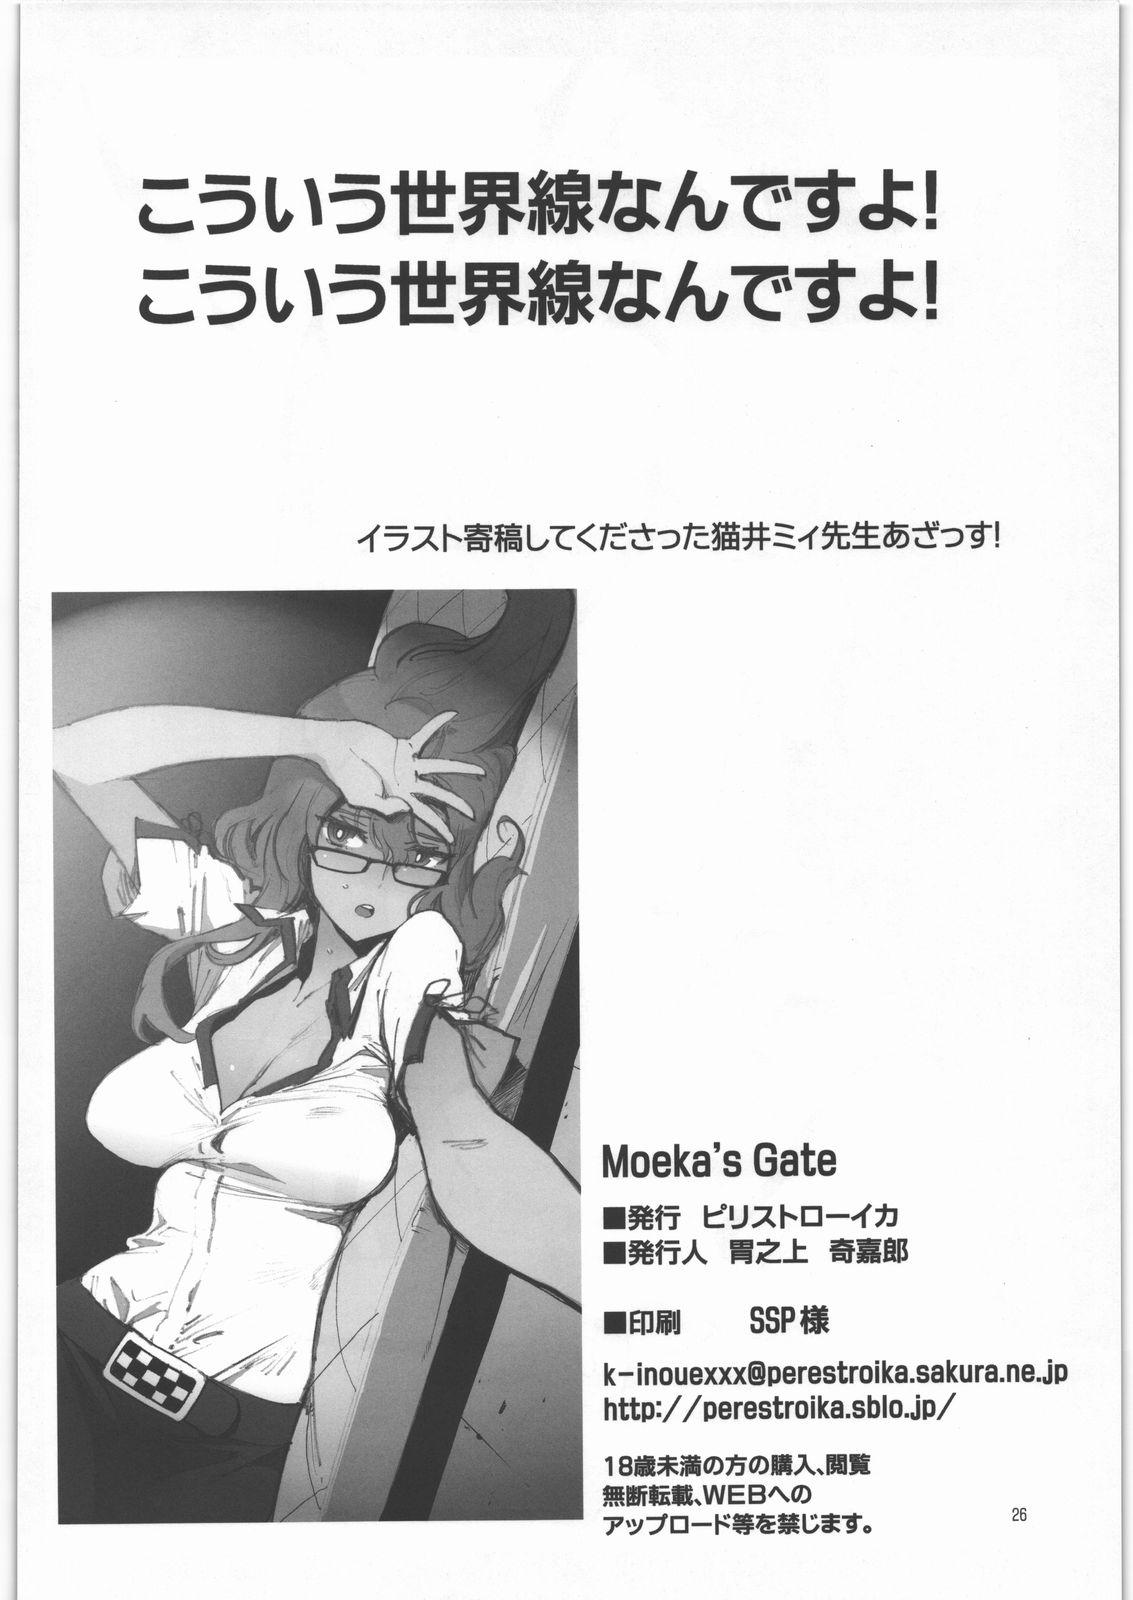 18yo Moeka's Gate - Steinsgate Ameture Porn - Page 25